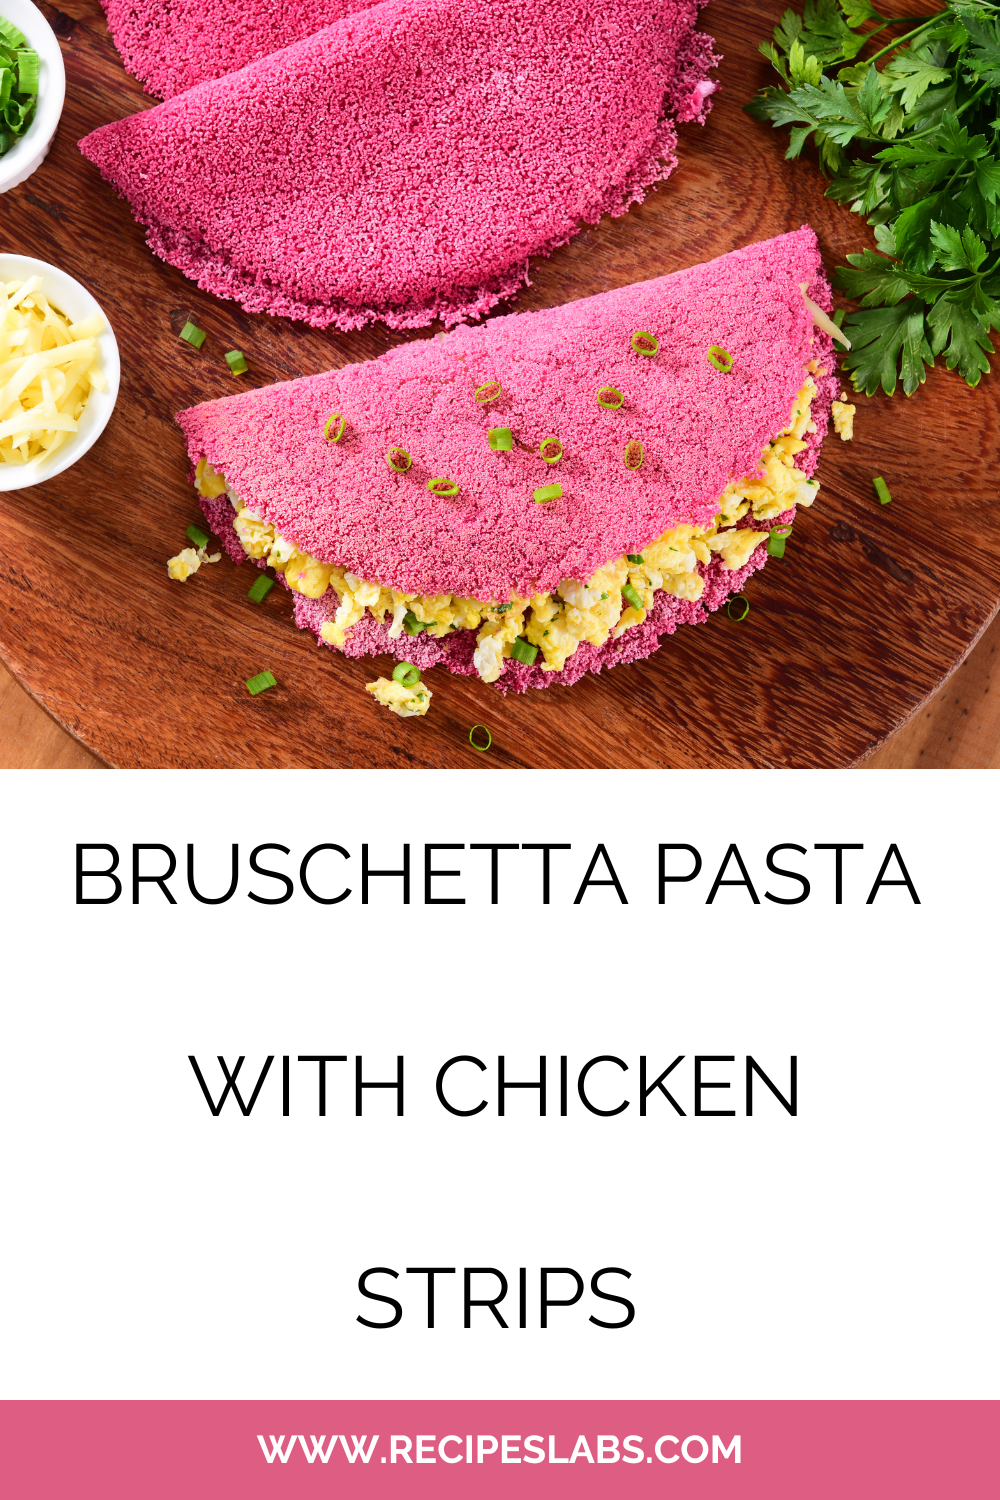 Bruschetta Pasta With Chicken Strips